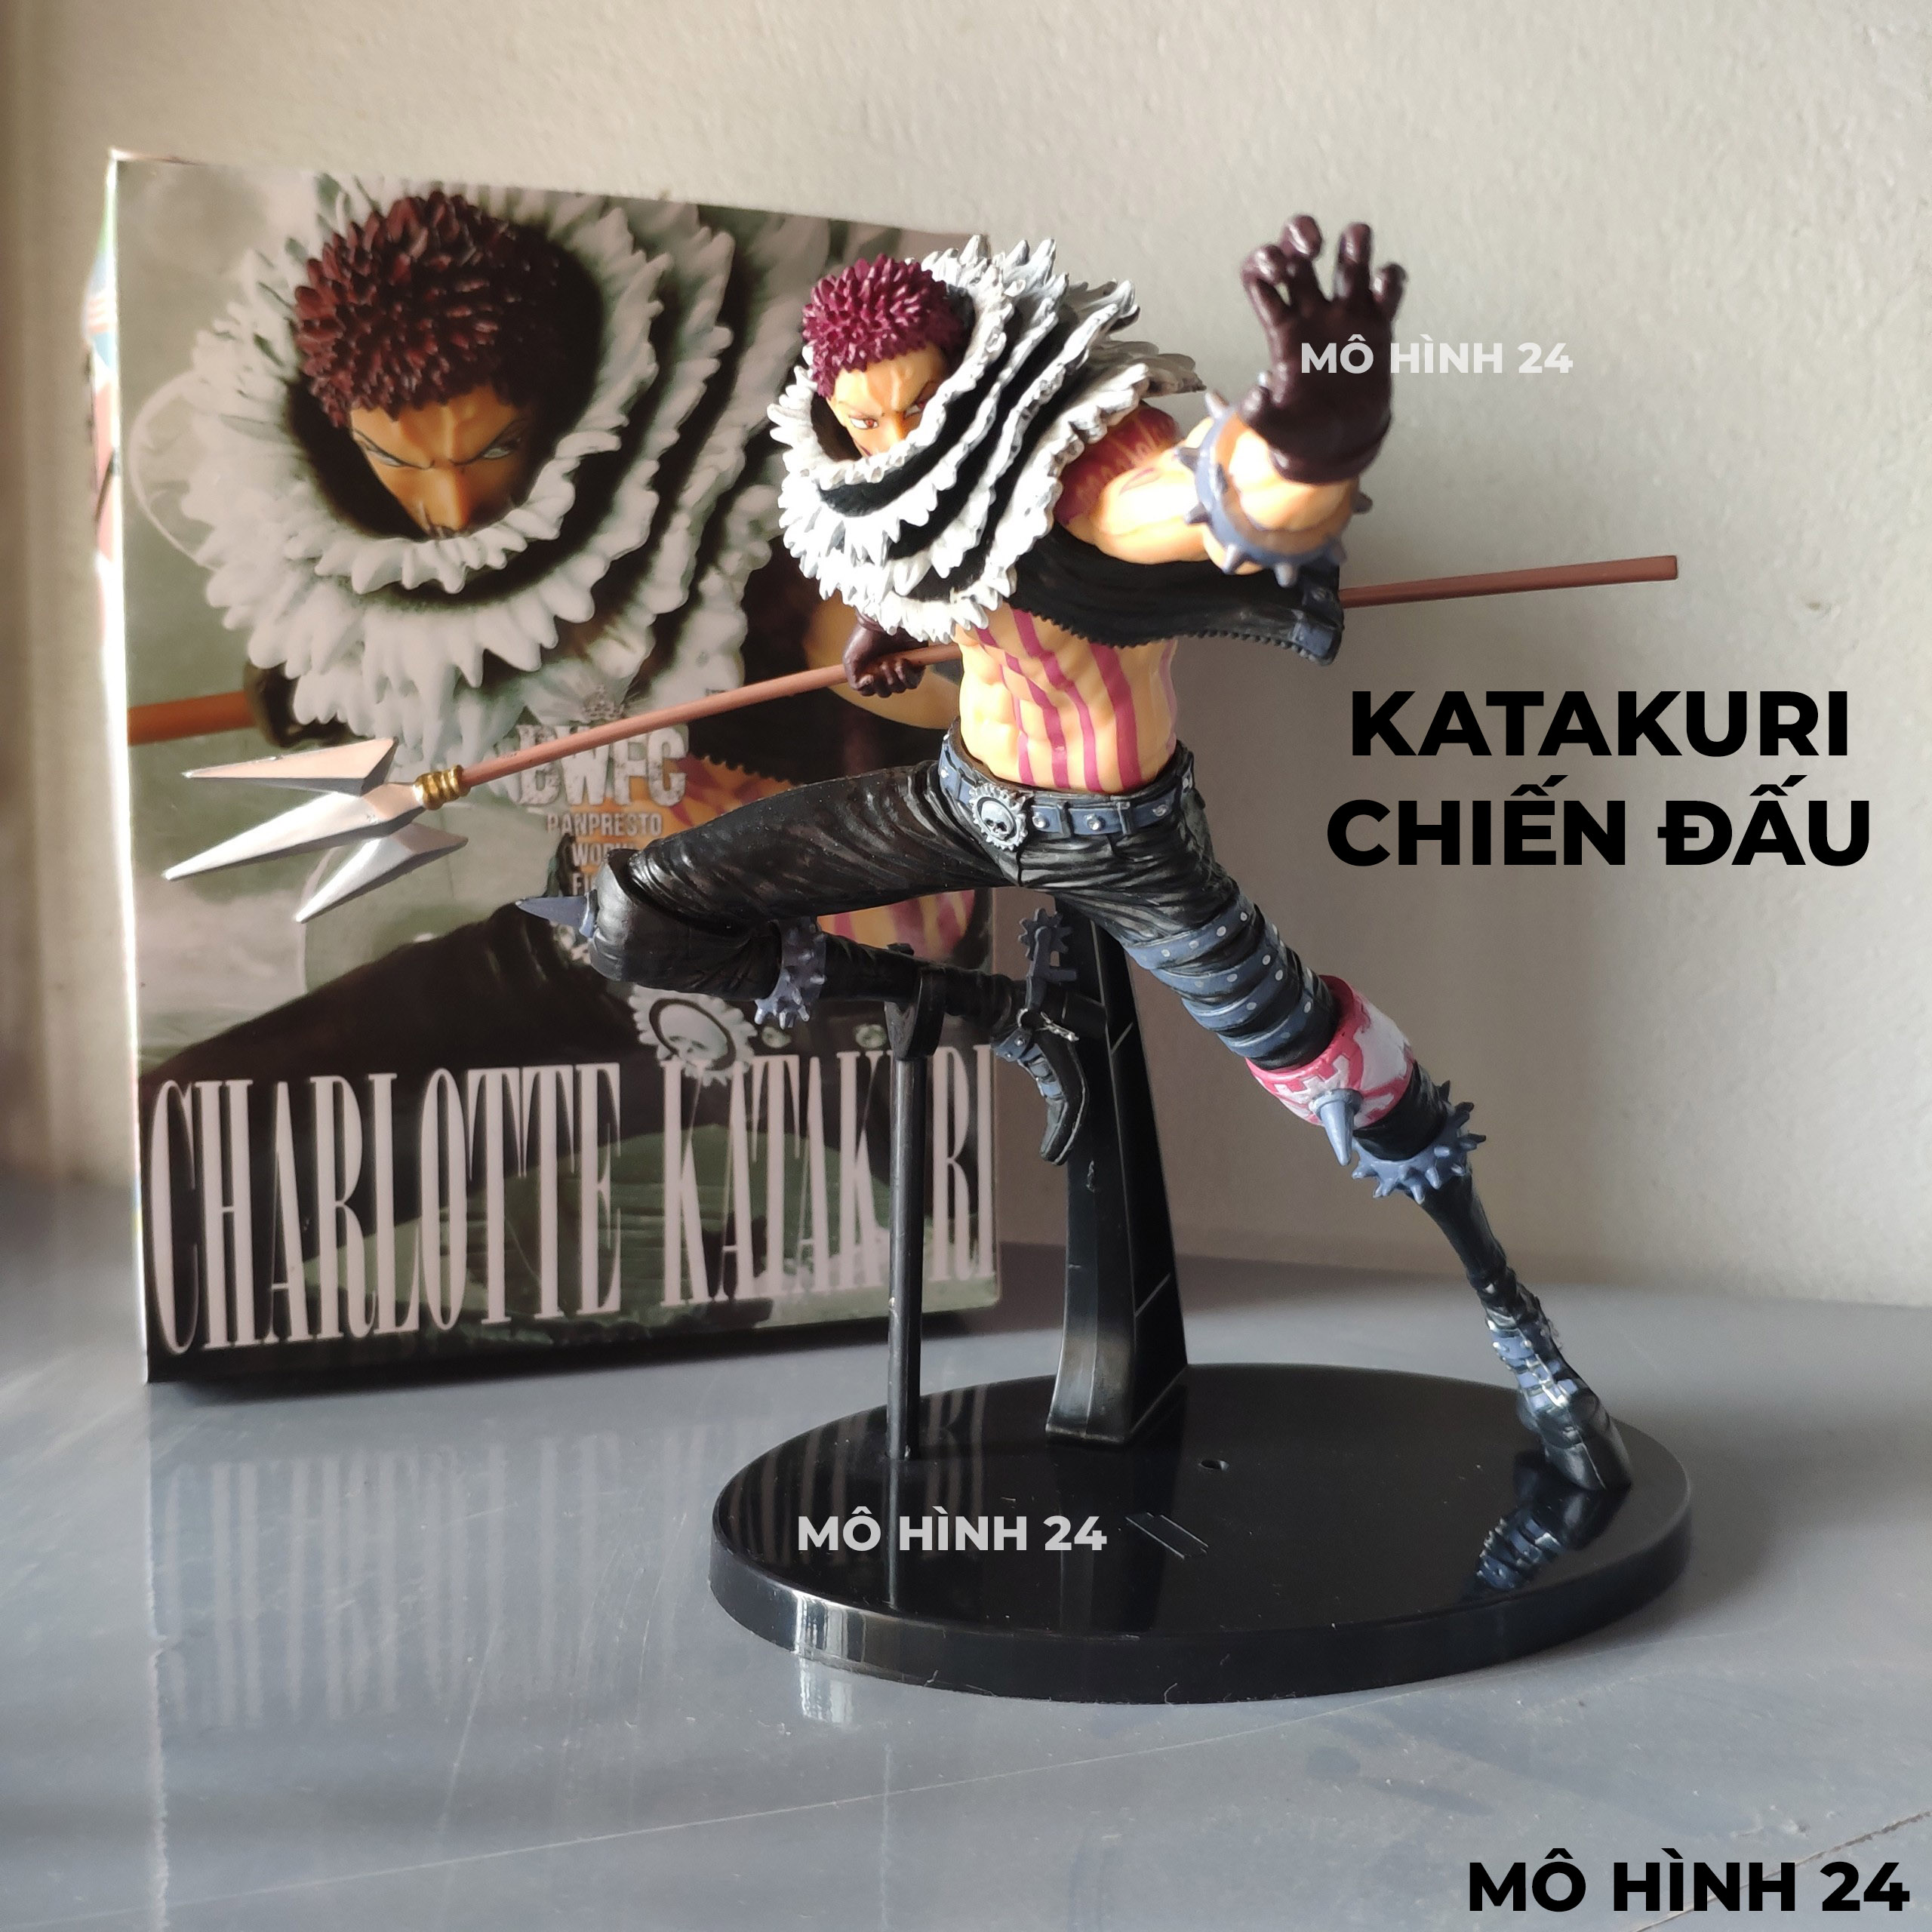 Katakuri Figure: Thử sức với mô hình nhân vật tuyệt đẹp của Katakuri và cảm nhận sự xuất sắc của tác phẩm One Piece. Với chi tiết tuyệt vời và thiết kế phong phú, bạn sẽ không muốn bỏ lỡ cơ hội sở hữu một tác phẩm tỉ mỉ như vậy.